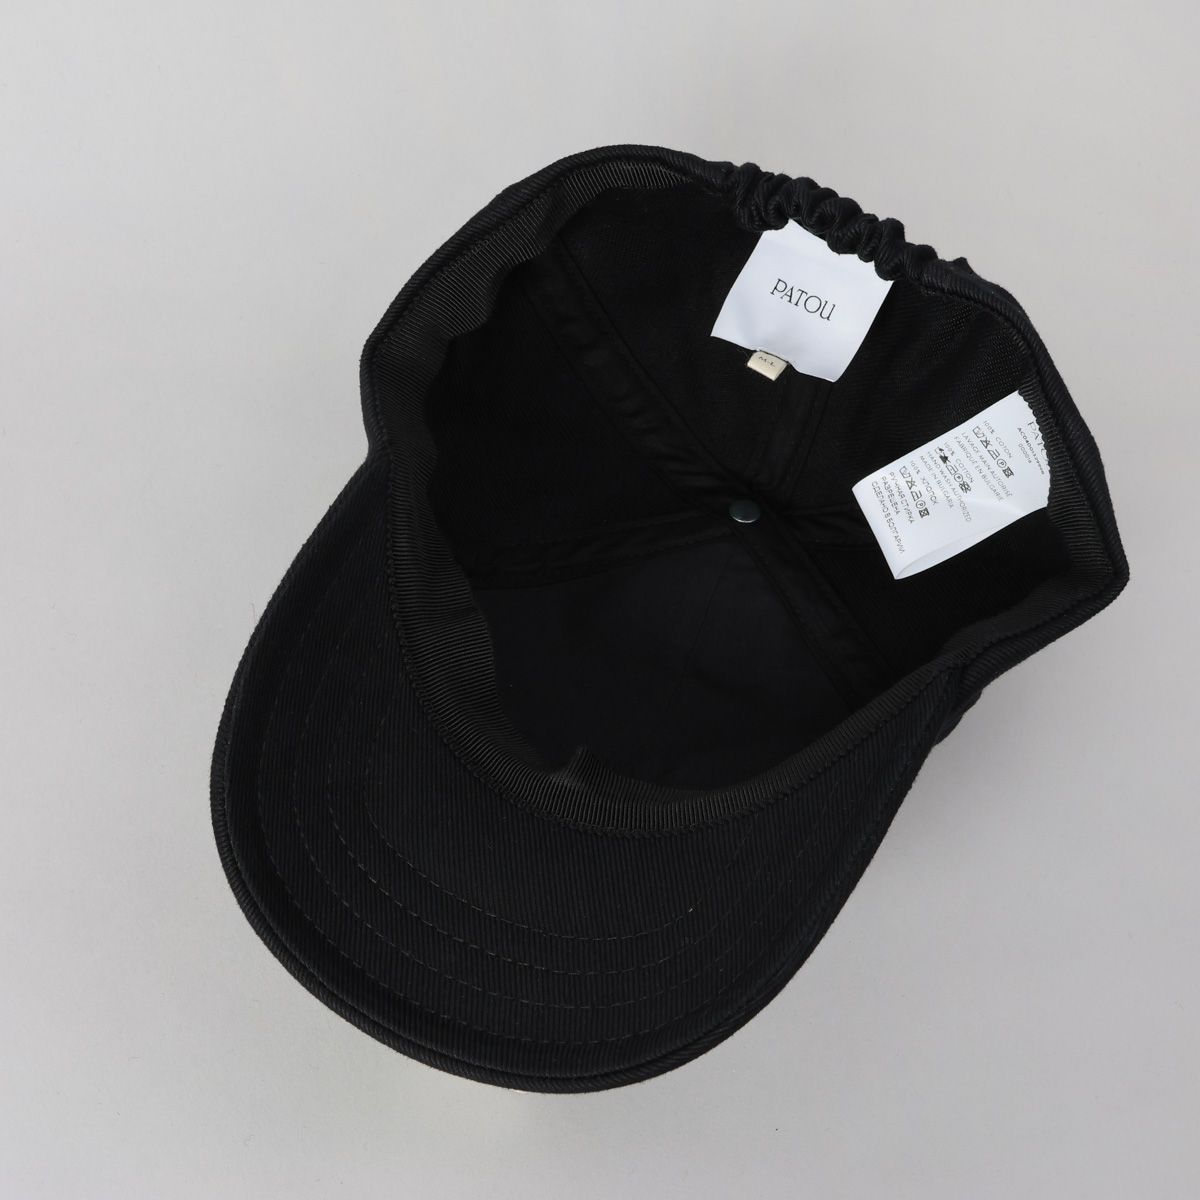 パトゥ PATOU キャップ 帽子 ブランドロゴ 無地 白 シンプル 人気 